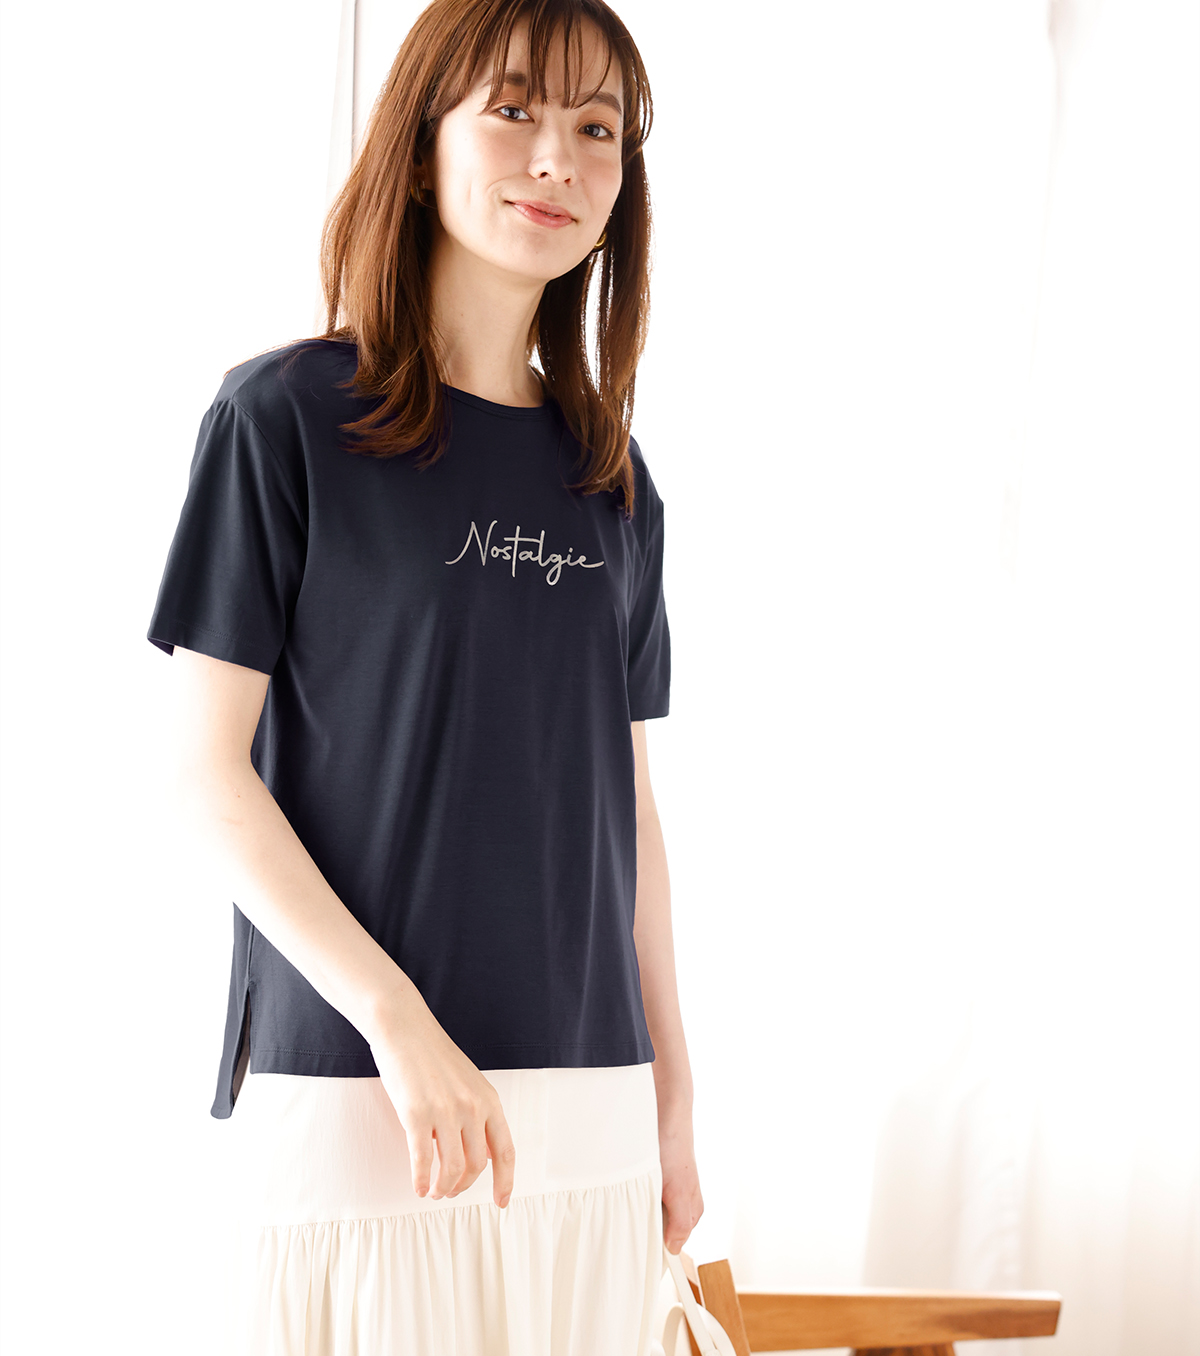 ひや楽ロゴプリントTシャツ・ネイビーを着用している女性の写真